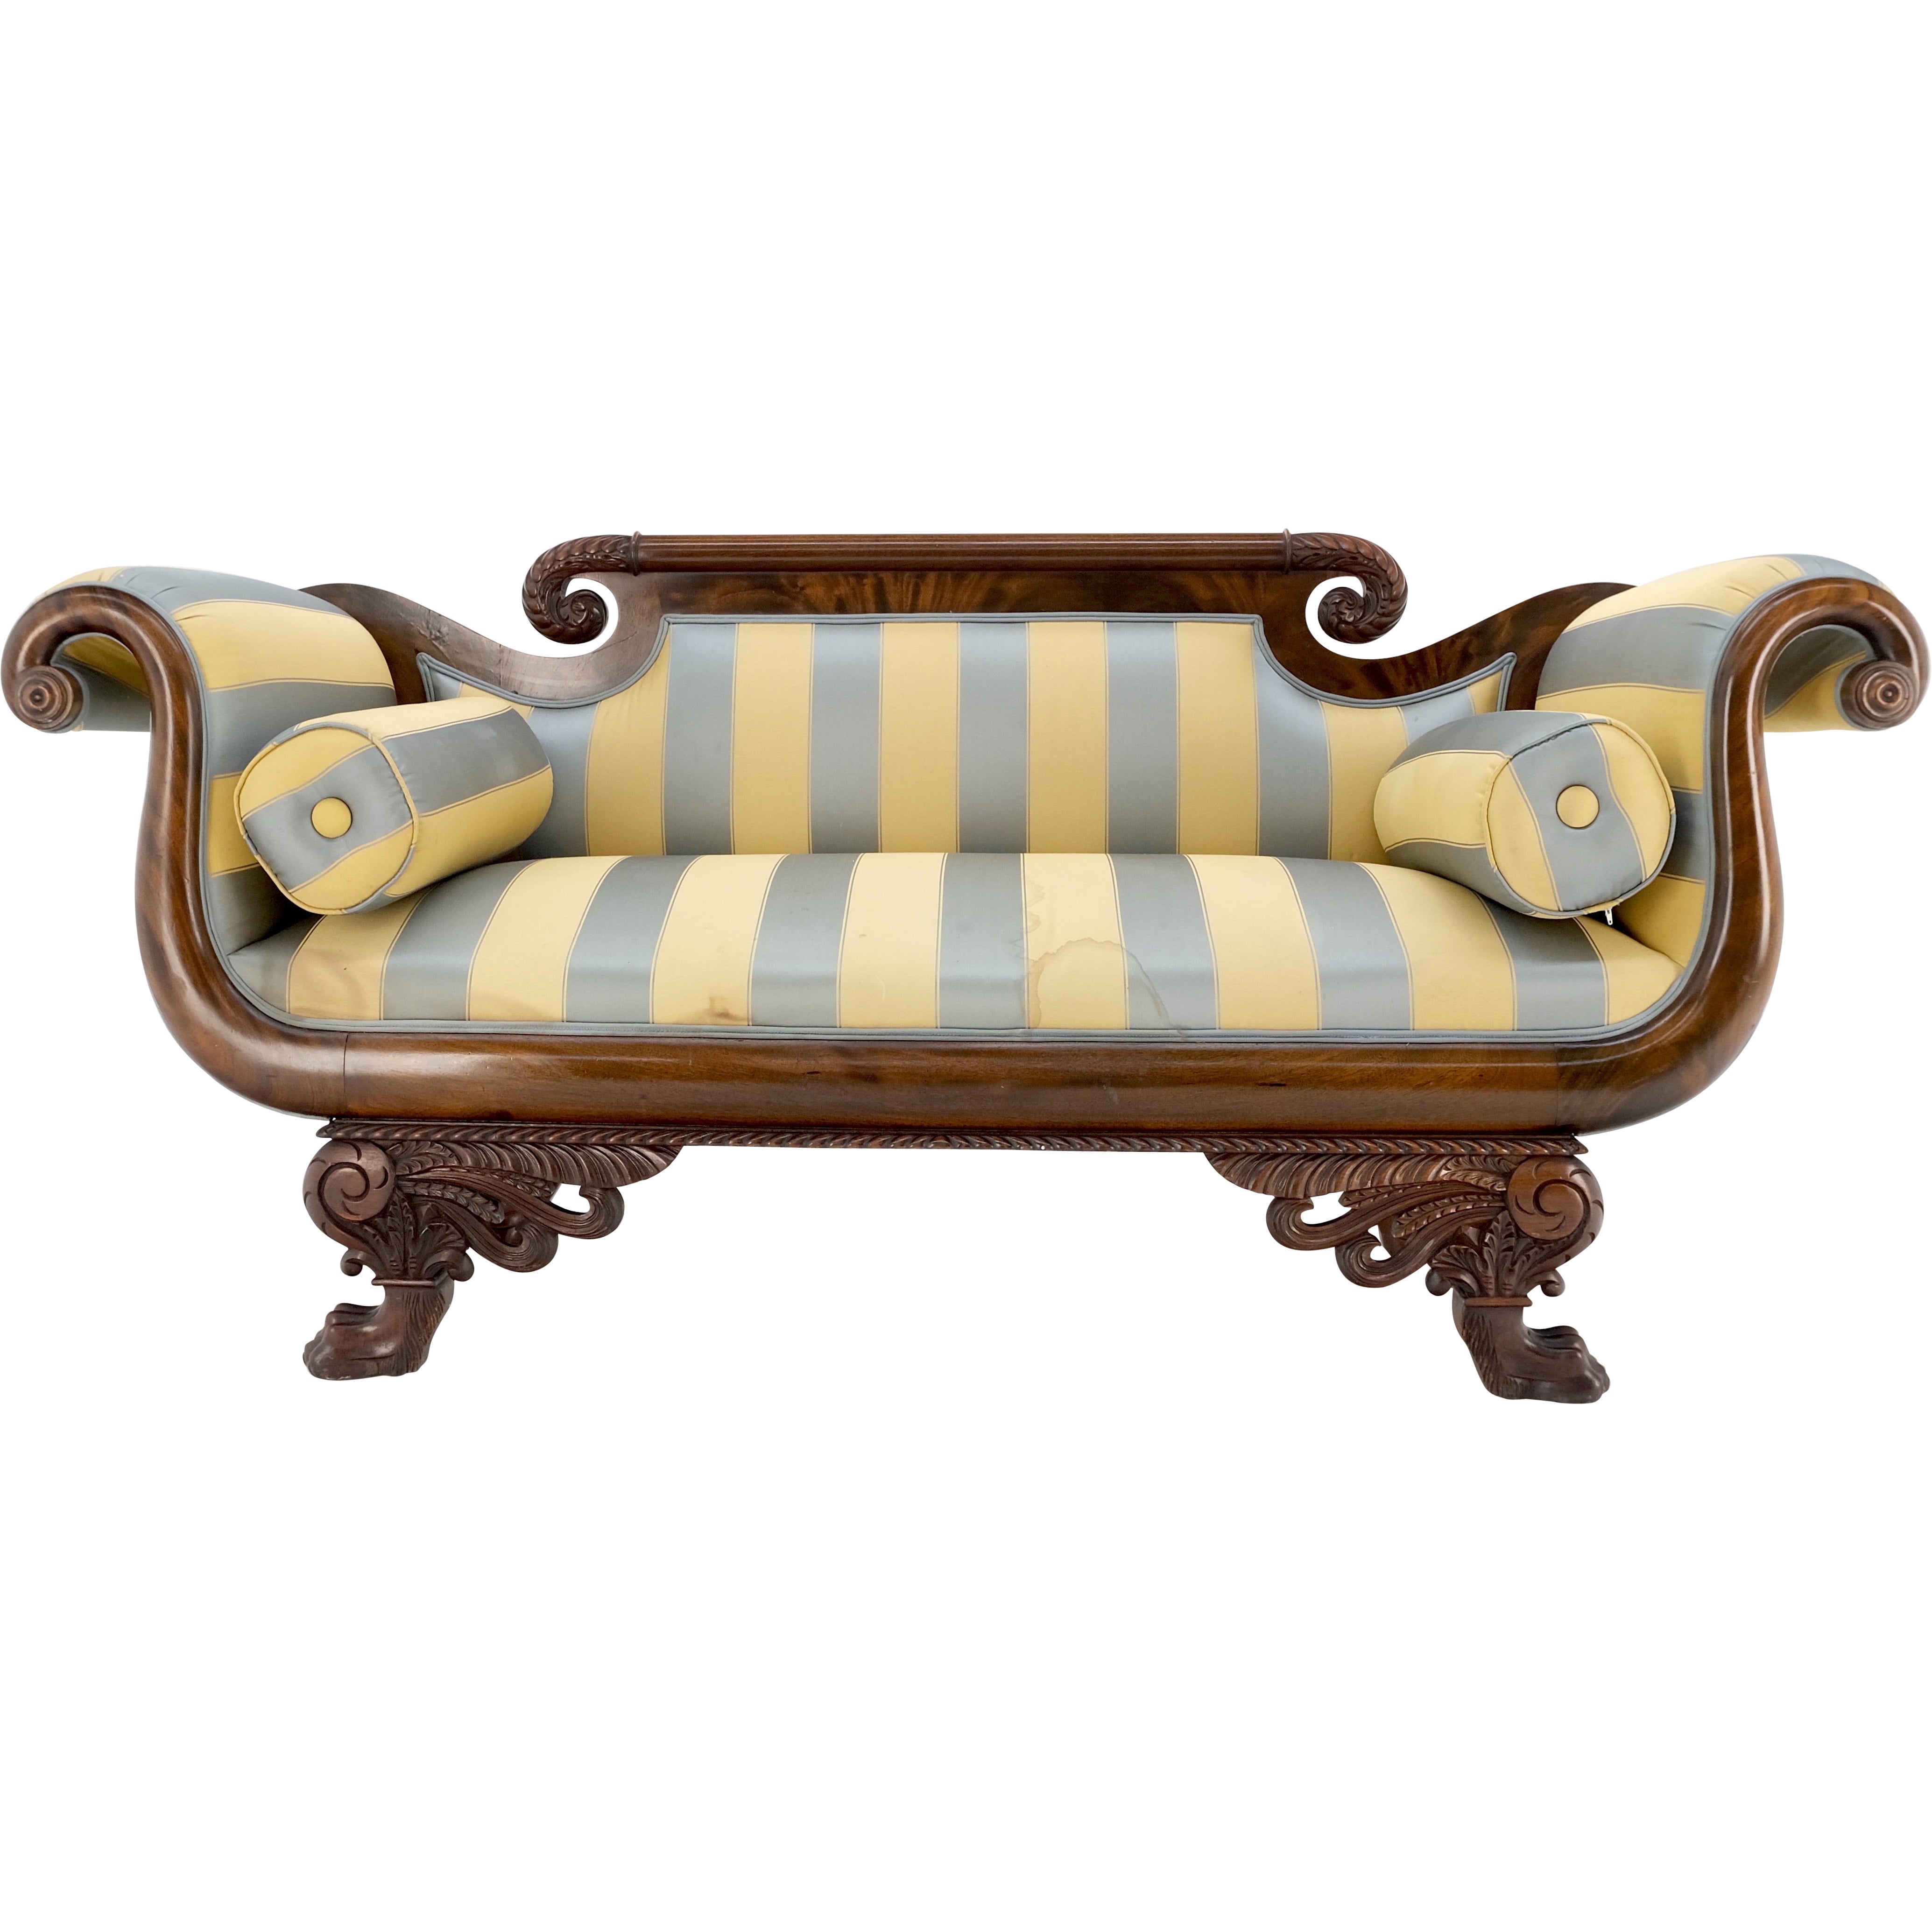 Mintfarbene Empire Sofa-Sette Loveseat-Kommode mit geschnitzten Details und Löwenfüßen